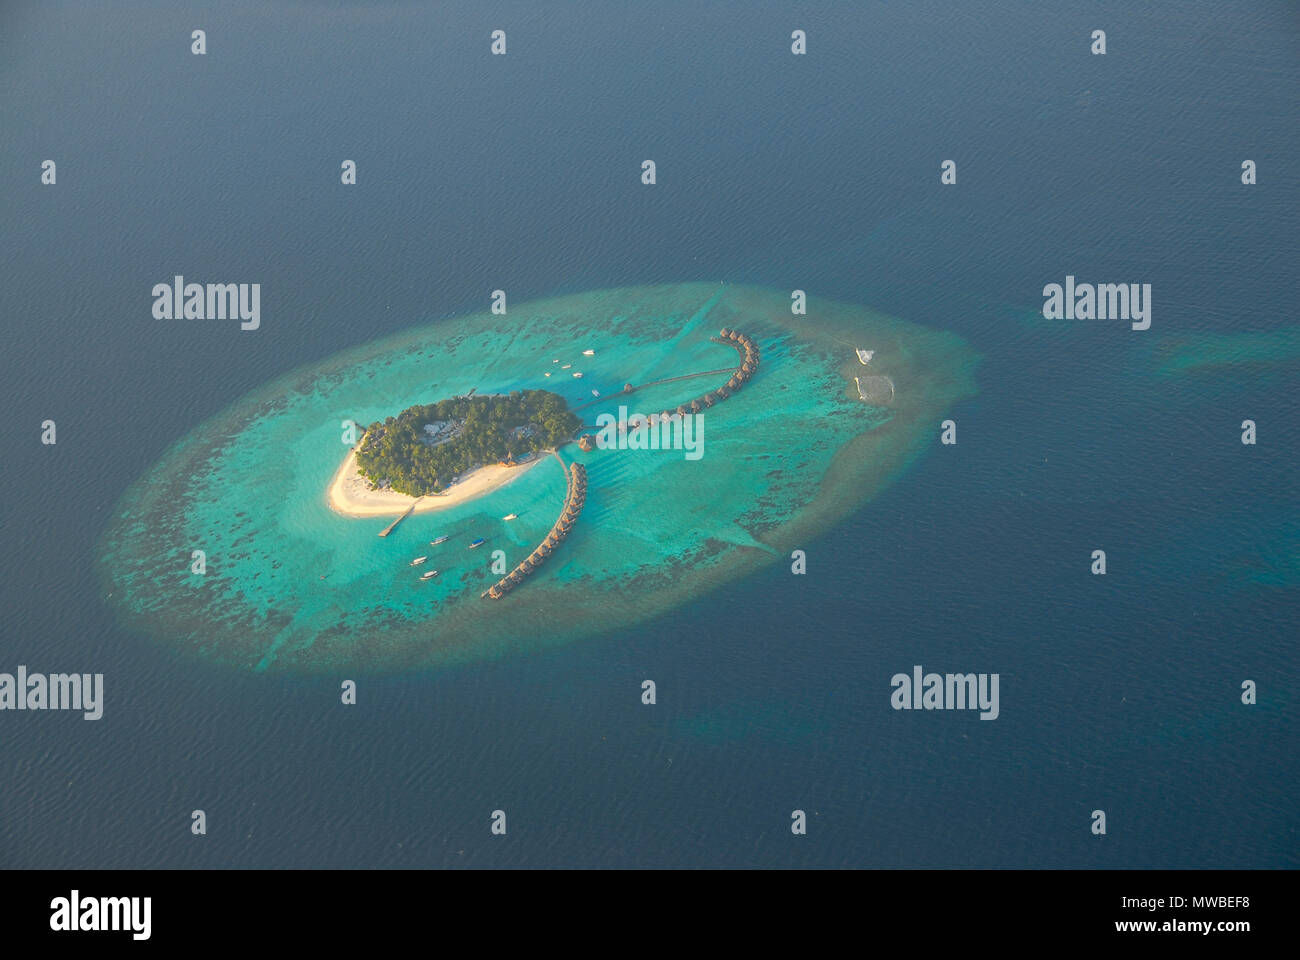 Blick auf den Malediven seaplaned der Maldivian Air Taxi Fluggesellschaft aus Männlichen, Antenne zerstreuten Blick auf Inseln und Atollen der Malediven, Indischer Ozean. Stockfoto